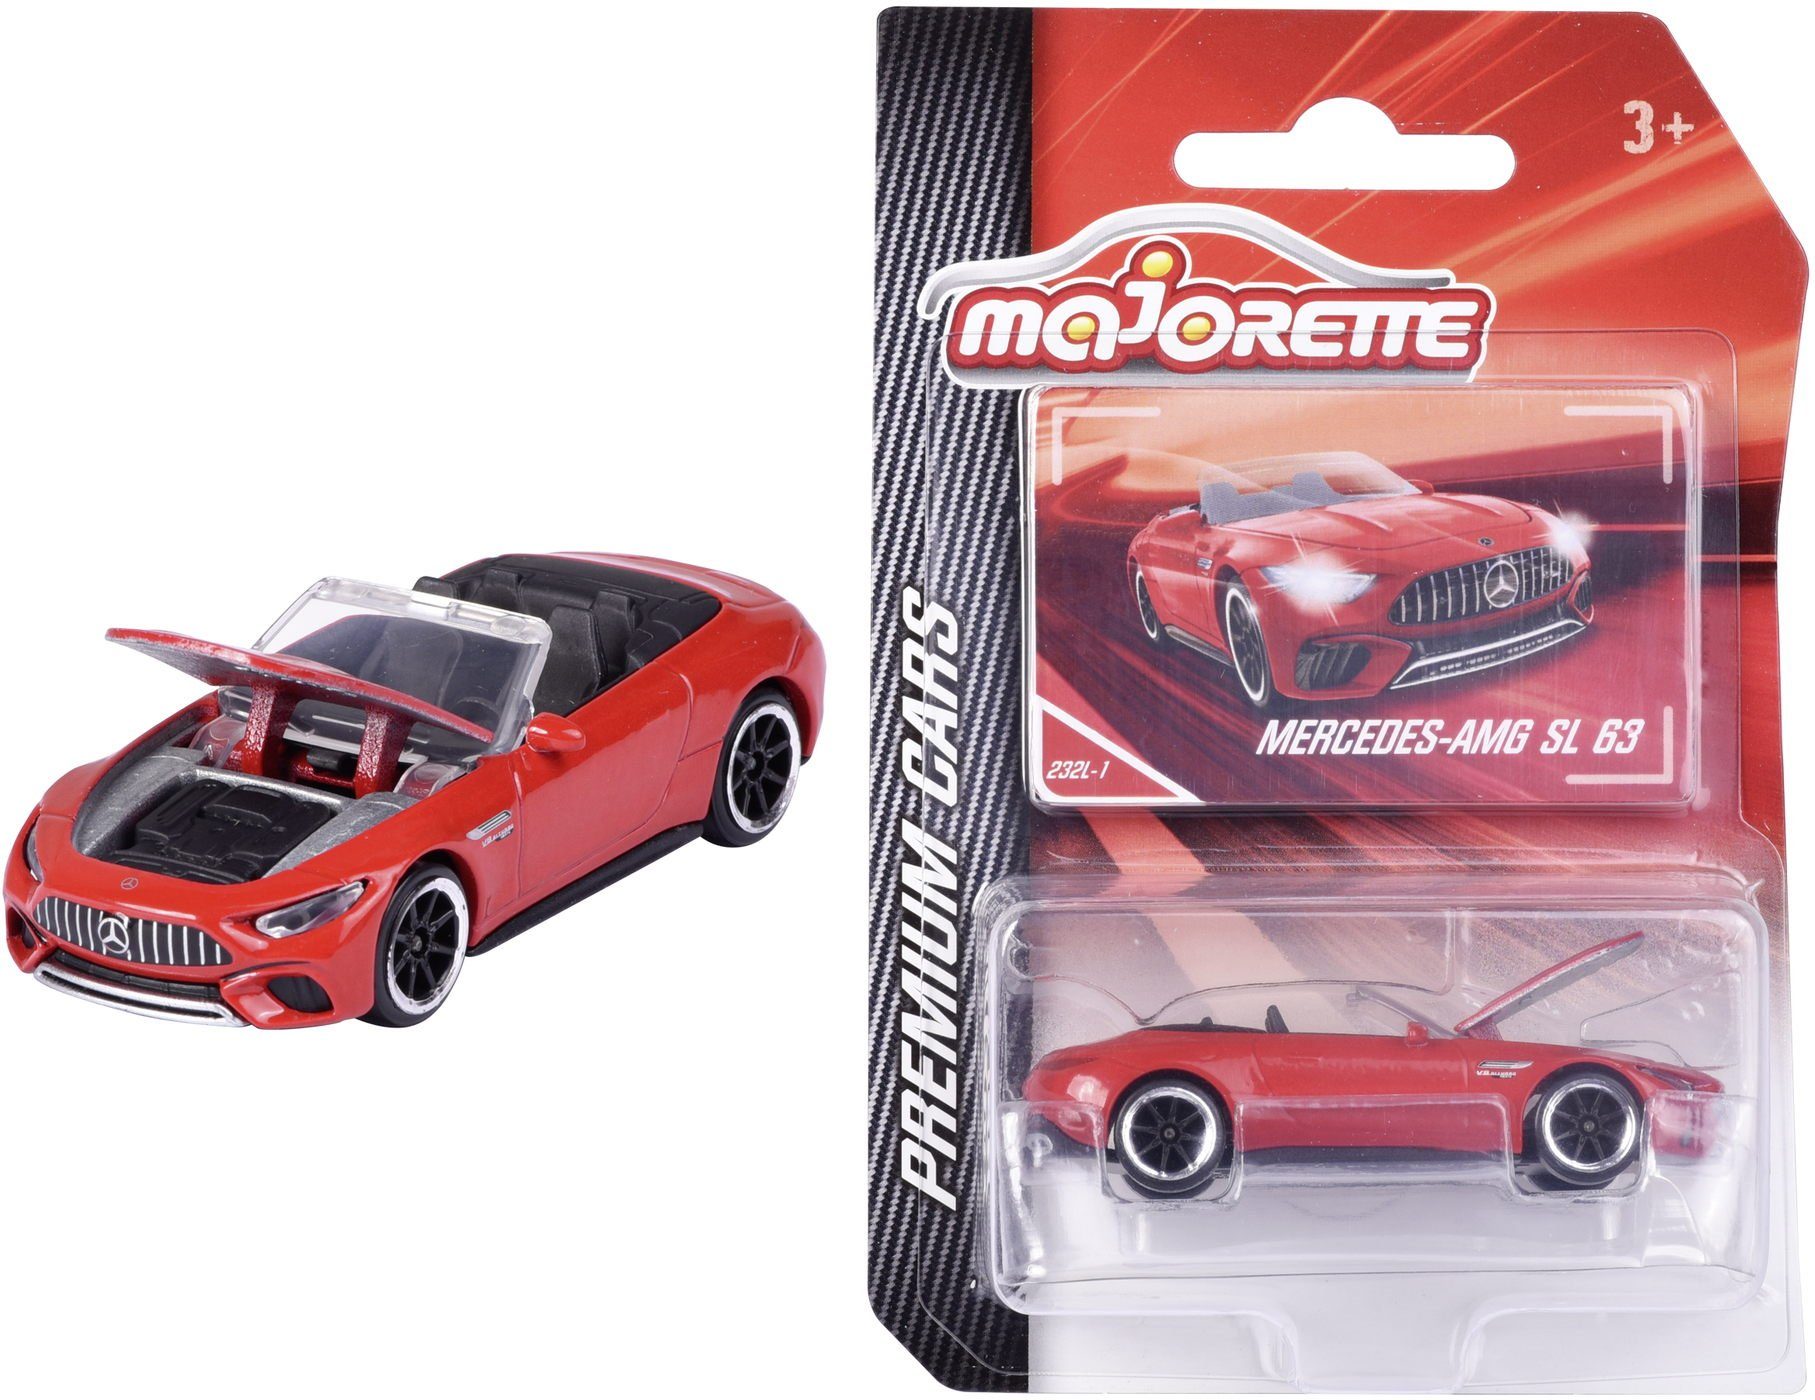 majORETTE Spielzeug-Auto Spielzeugauto Premium Cars Mercedes-AMG SL rot  212053052Q36